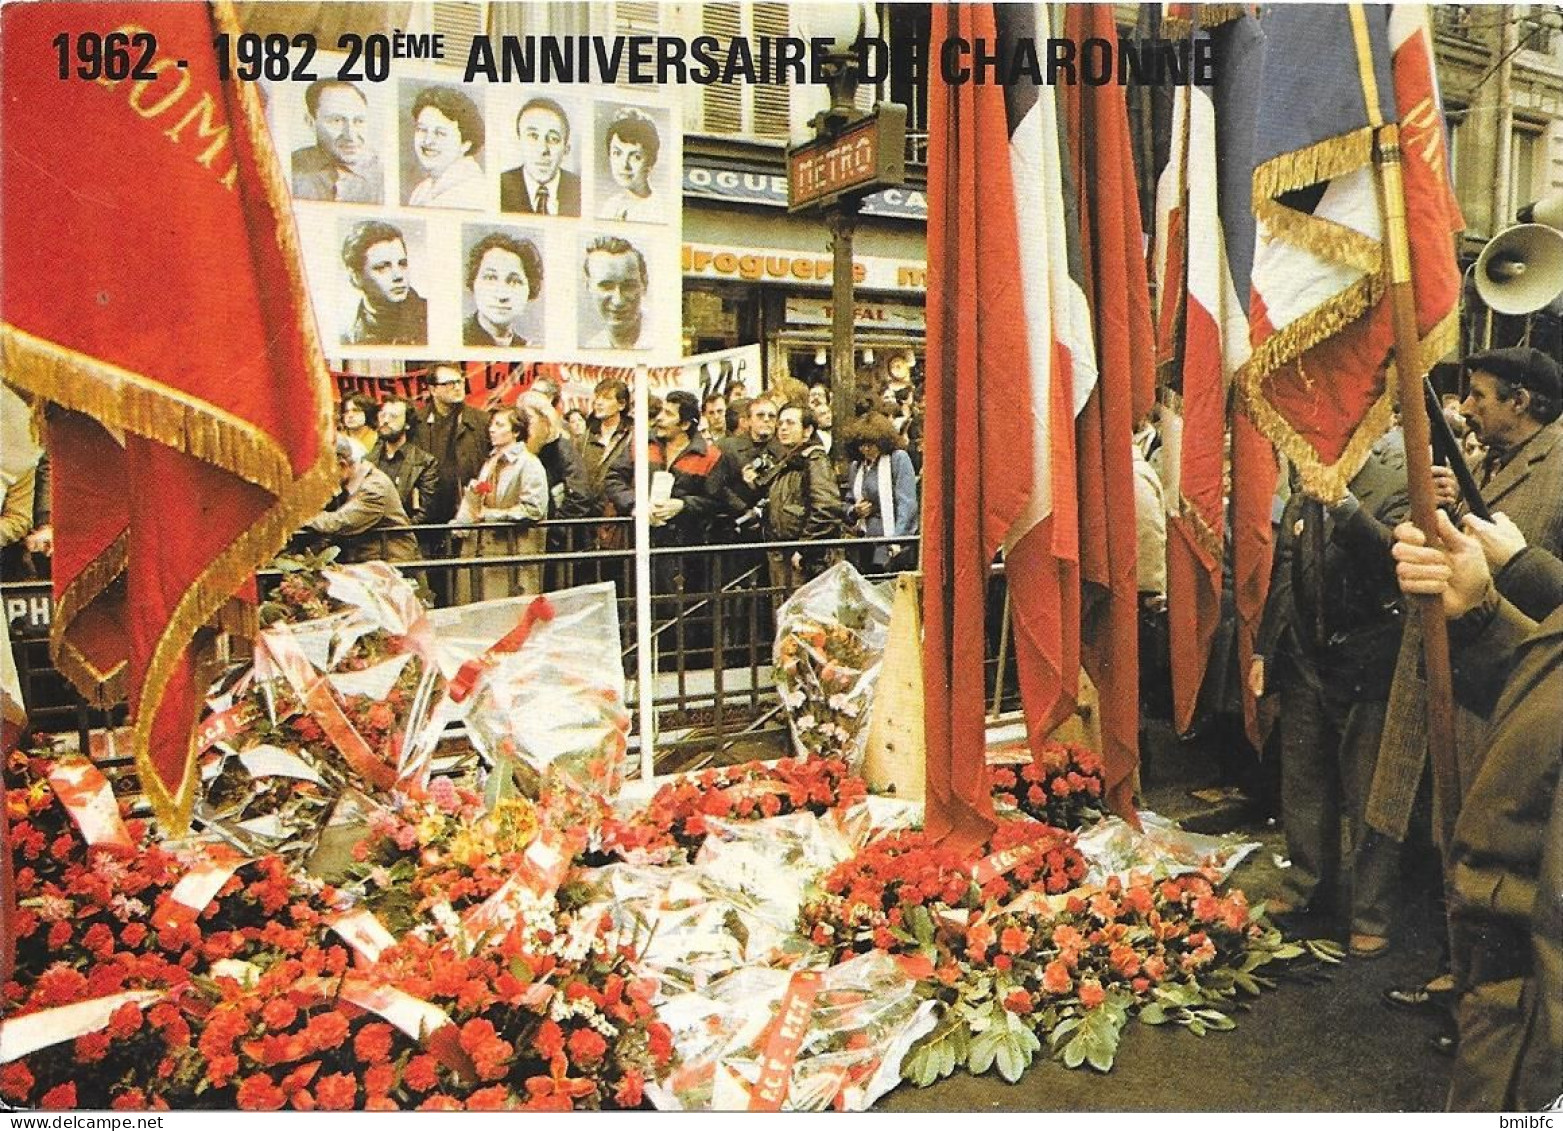 1962-1982 - 20ème Anniversaire De CHARONNE - Manifestazioni